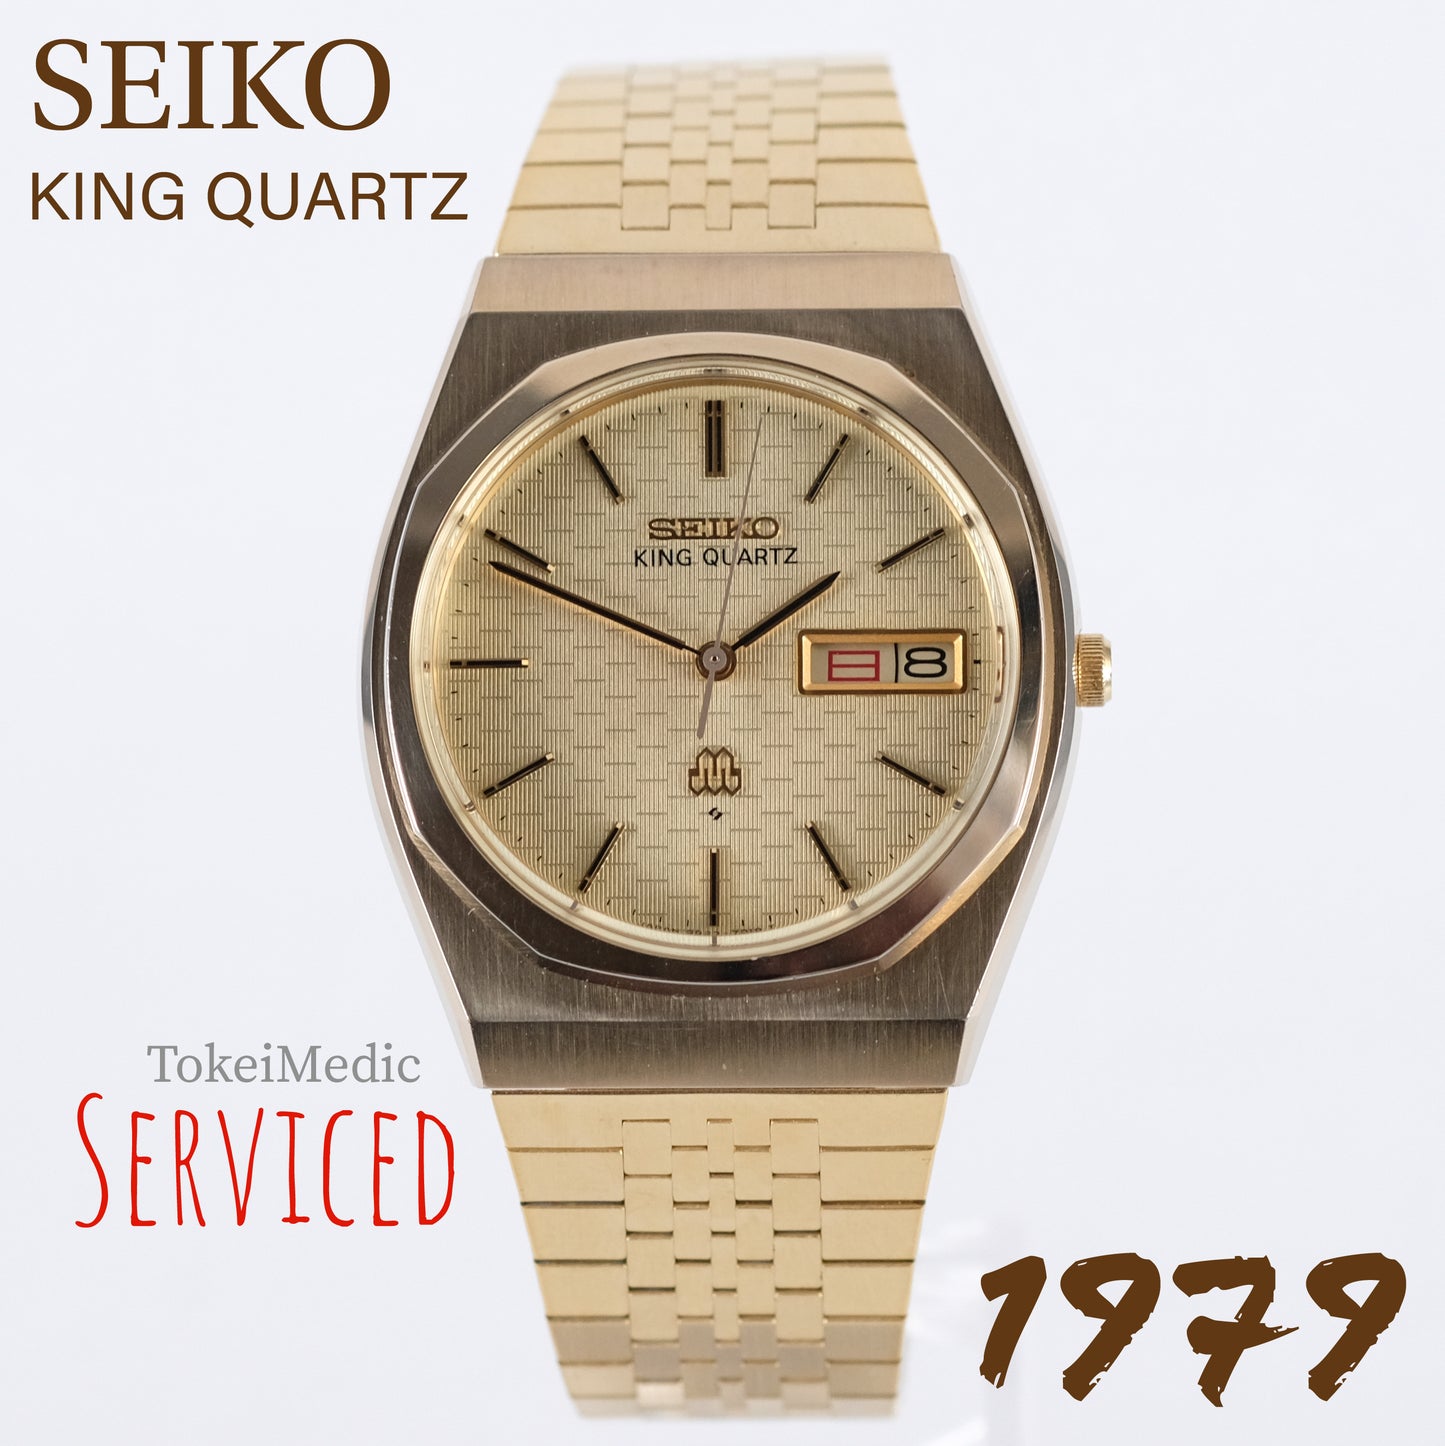 1979 Seiko King Quartz 9923-7010